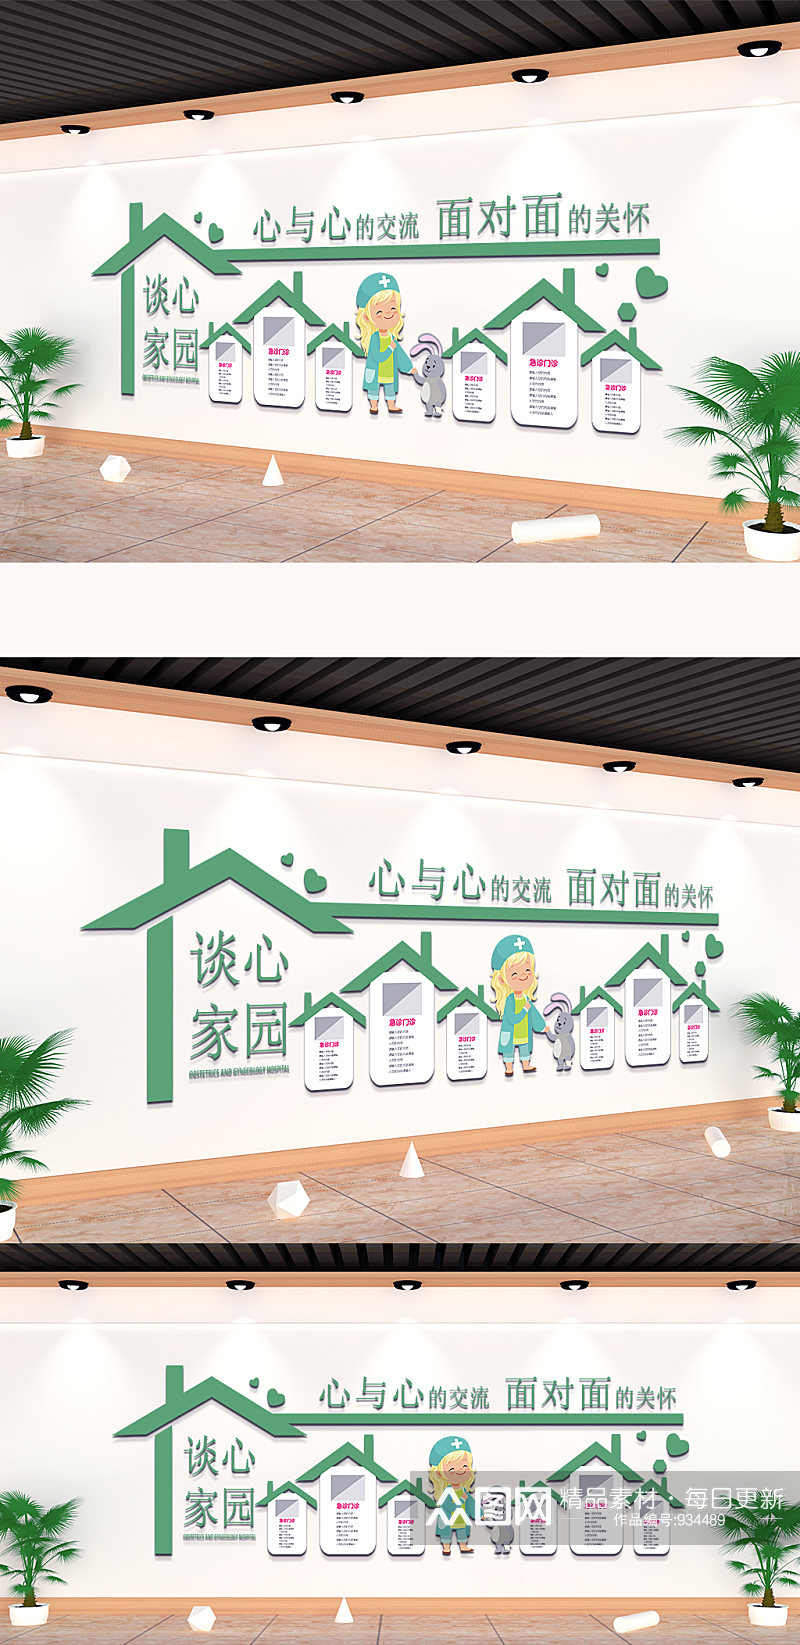 绿色房屋造型校园文化墙素材